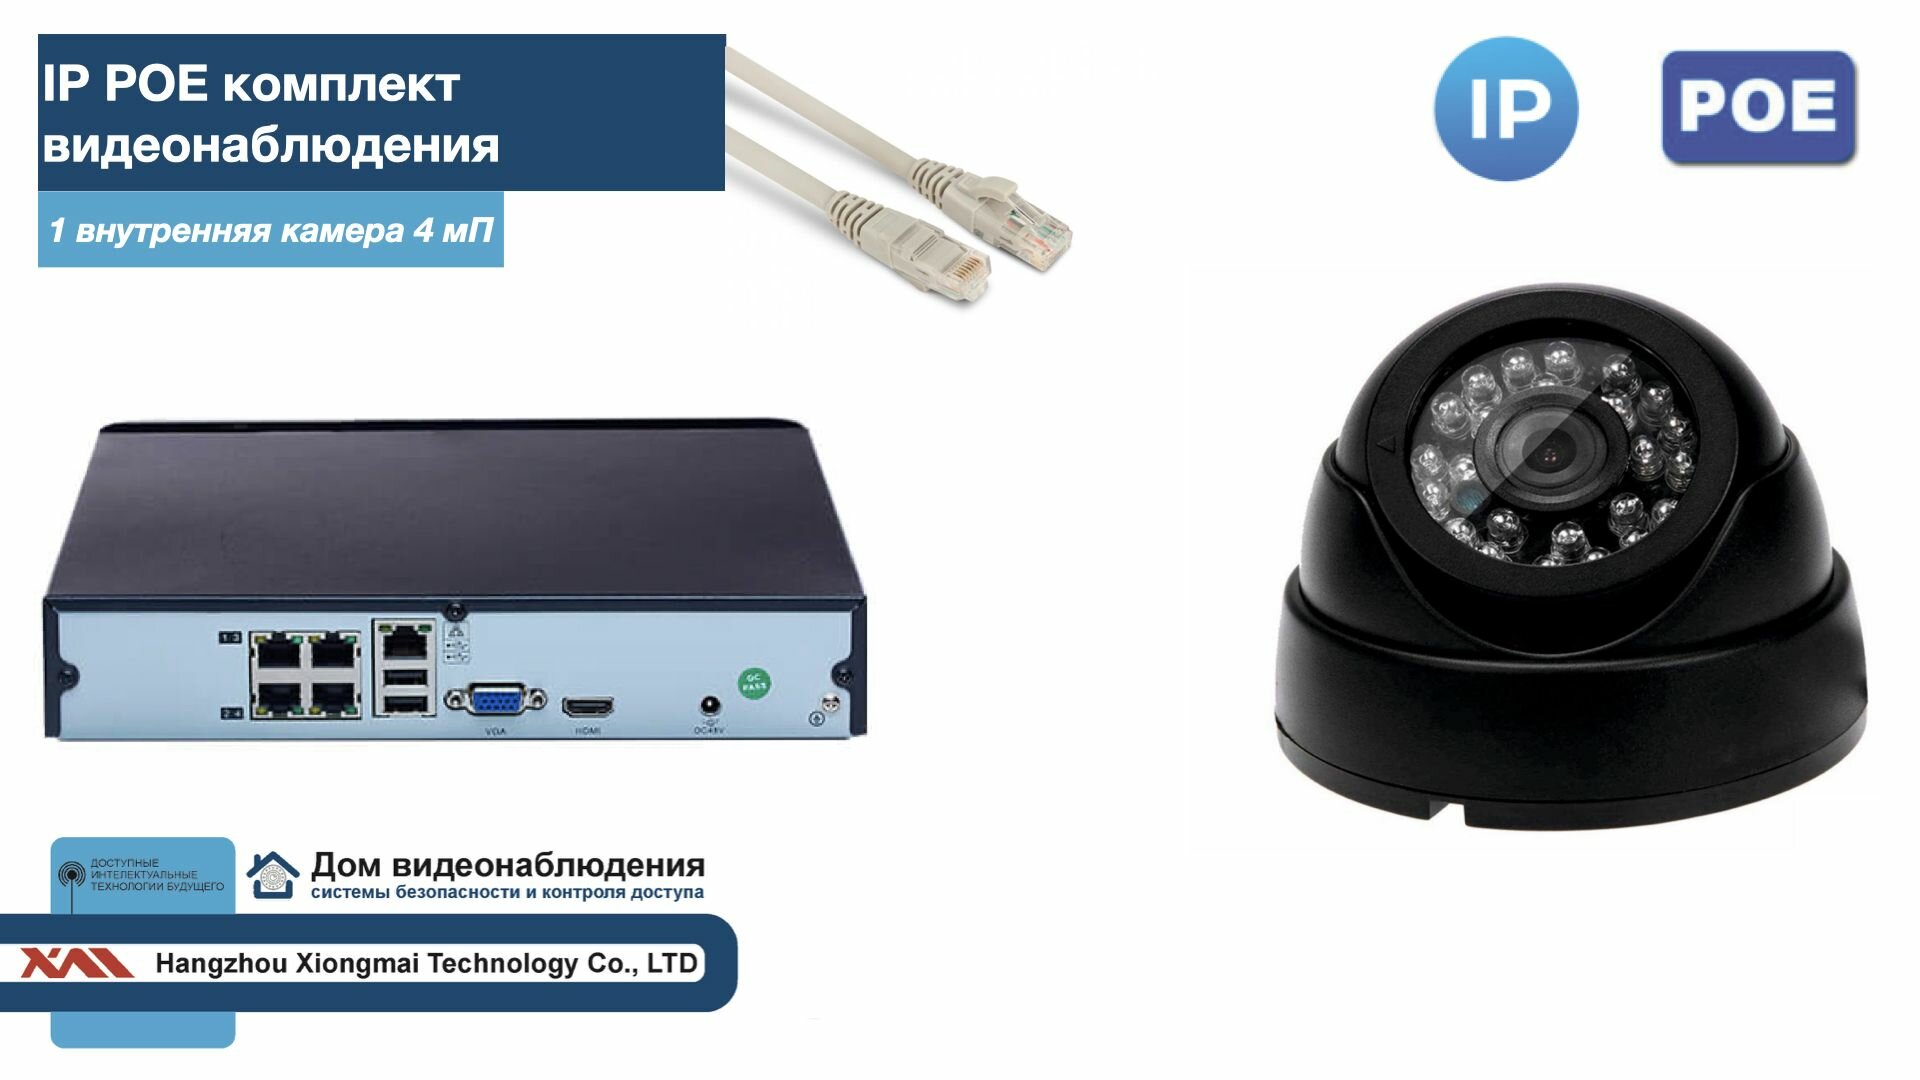 Полный IP POE комплект видеонаблюдения на 1 камеру (KIT1IPPOE300B4MP-2)